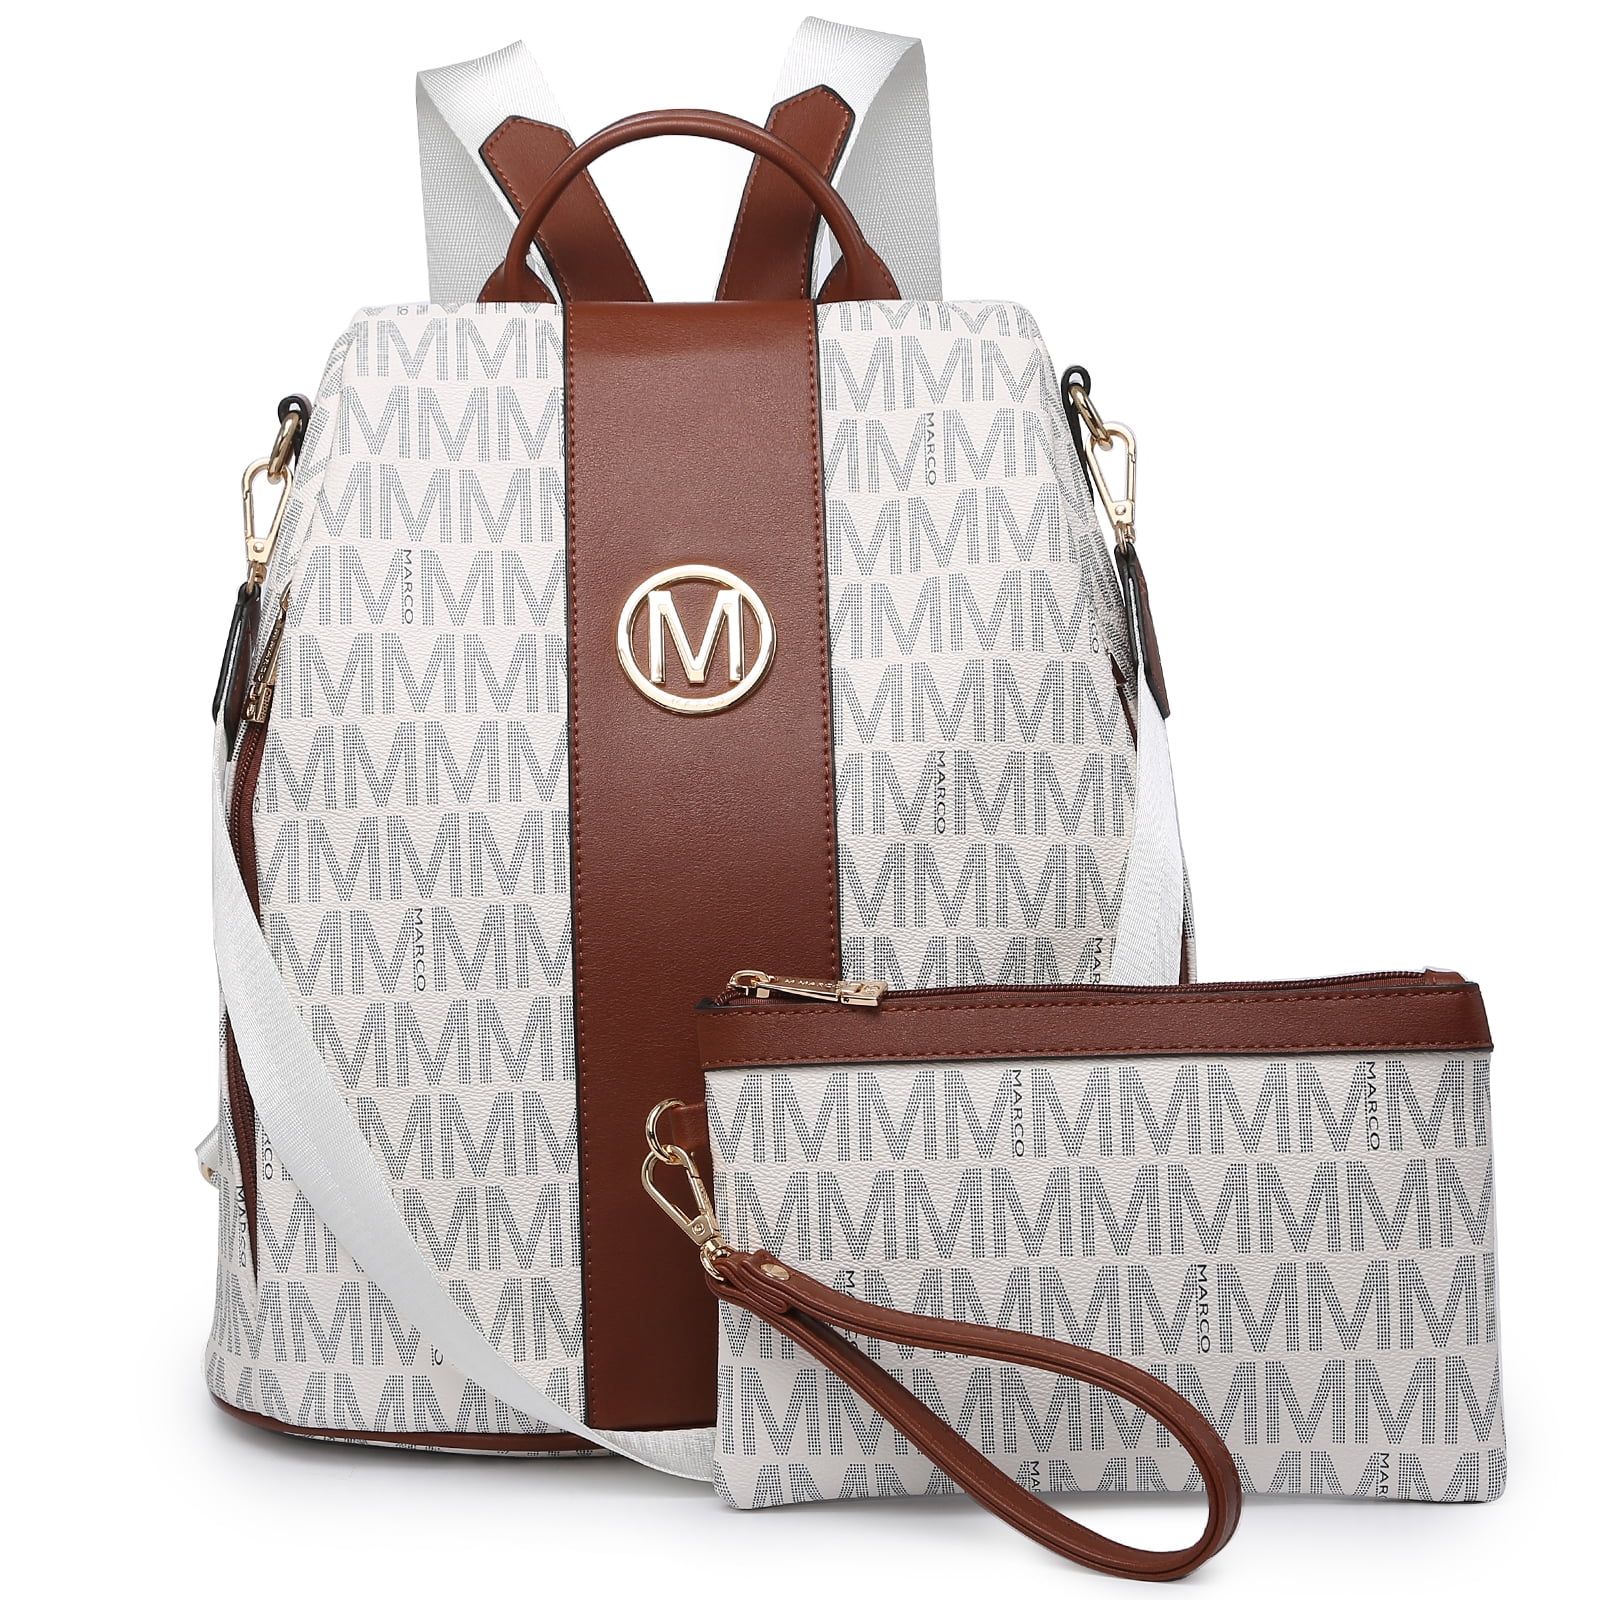 MKP Woman Fashion Backpacks Handbags Anti-Theft Travel School Bags ...